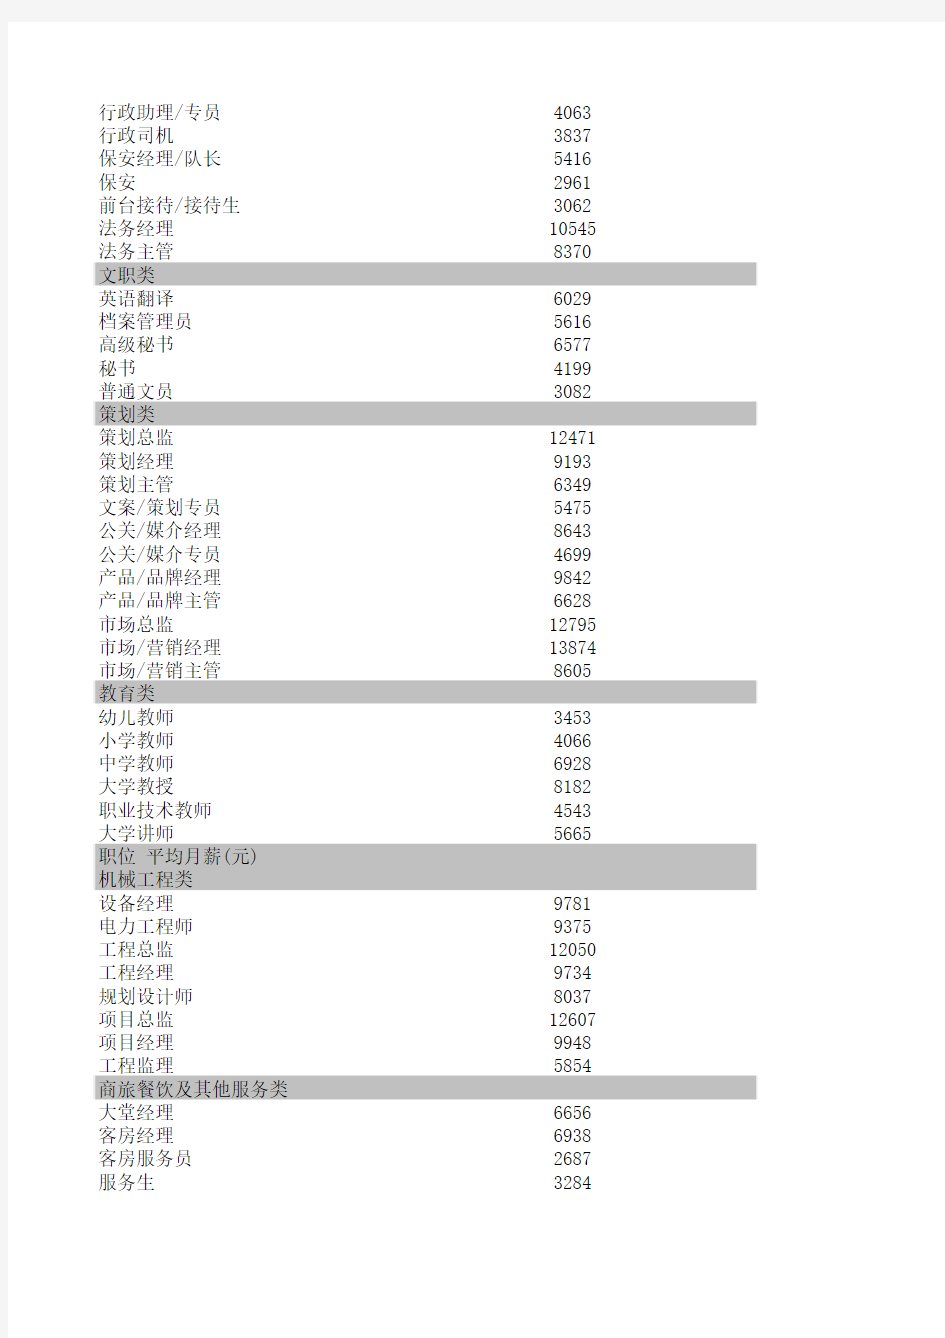 2013-2014年度广东地区薪酬调查表--广州地区部分行业薪酬情况